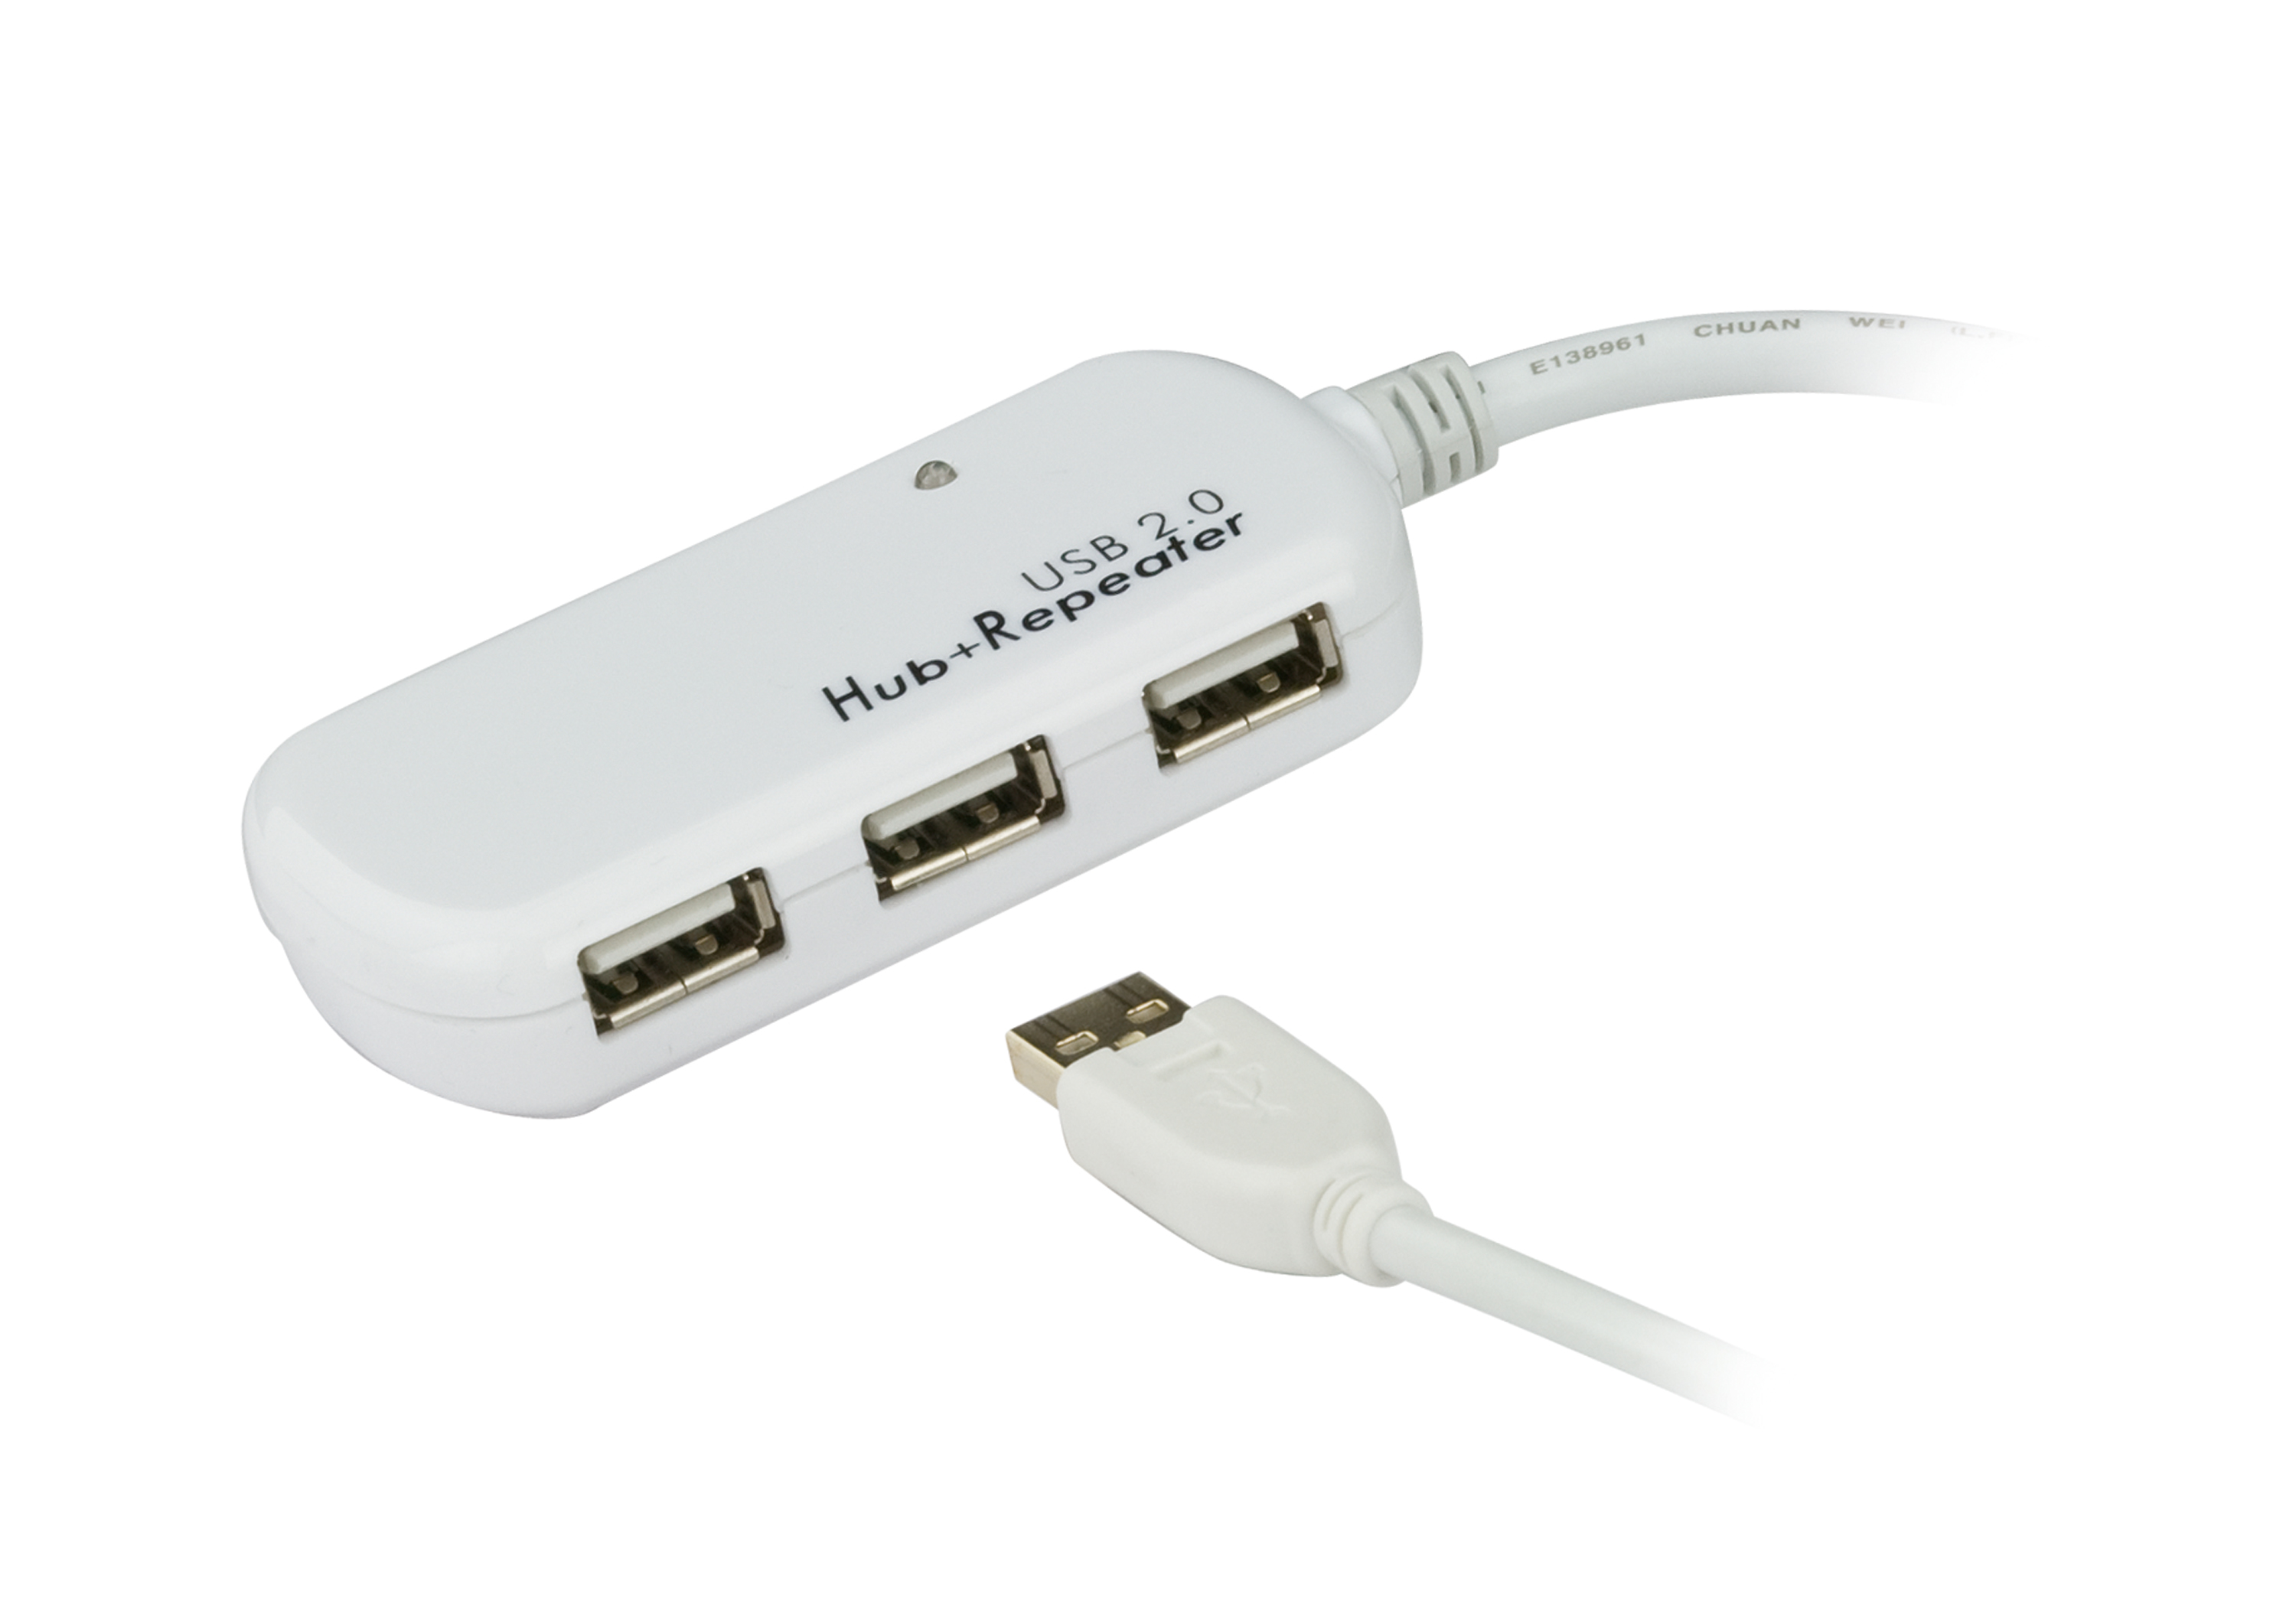 Aten Hub 4 port USB 2.0